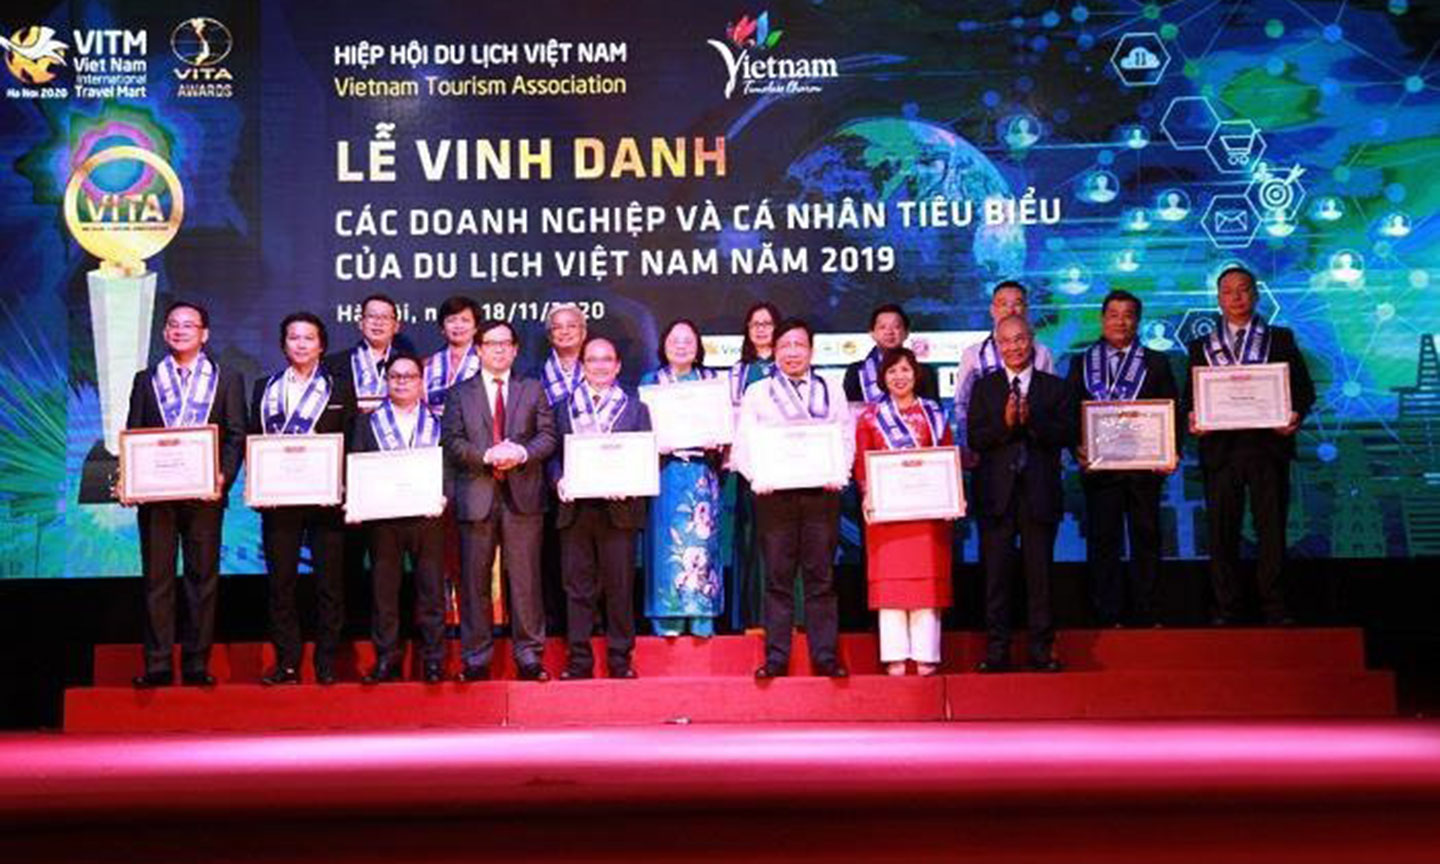 Ông Lê Hoàng Ân (đứng hàng 1, vị trí thứ 2 từ phải sang) đại diện Cty Cổ phần Du lịch An Giang nhận bằng khen của Hiệp hội Du lịch Việt Nam.